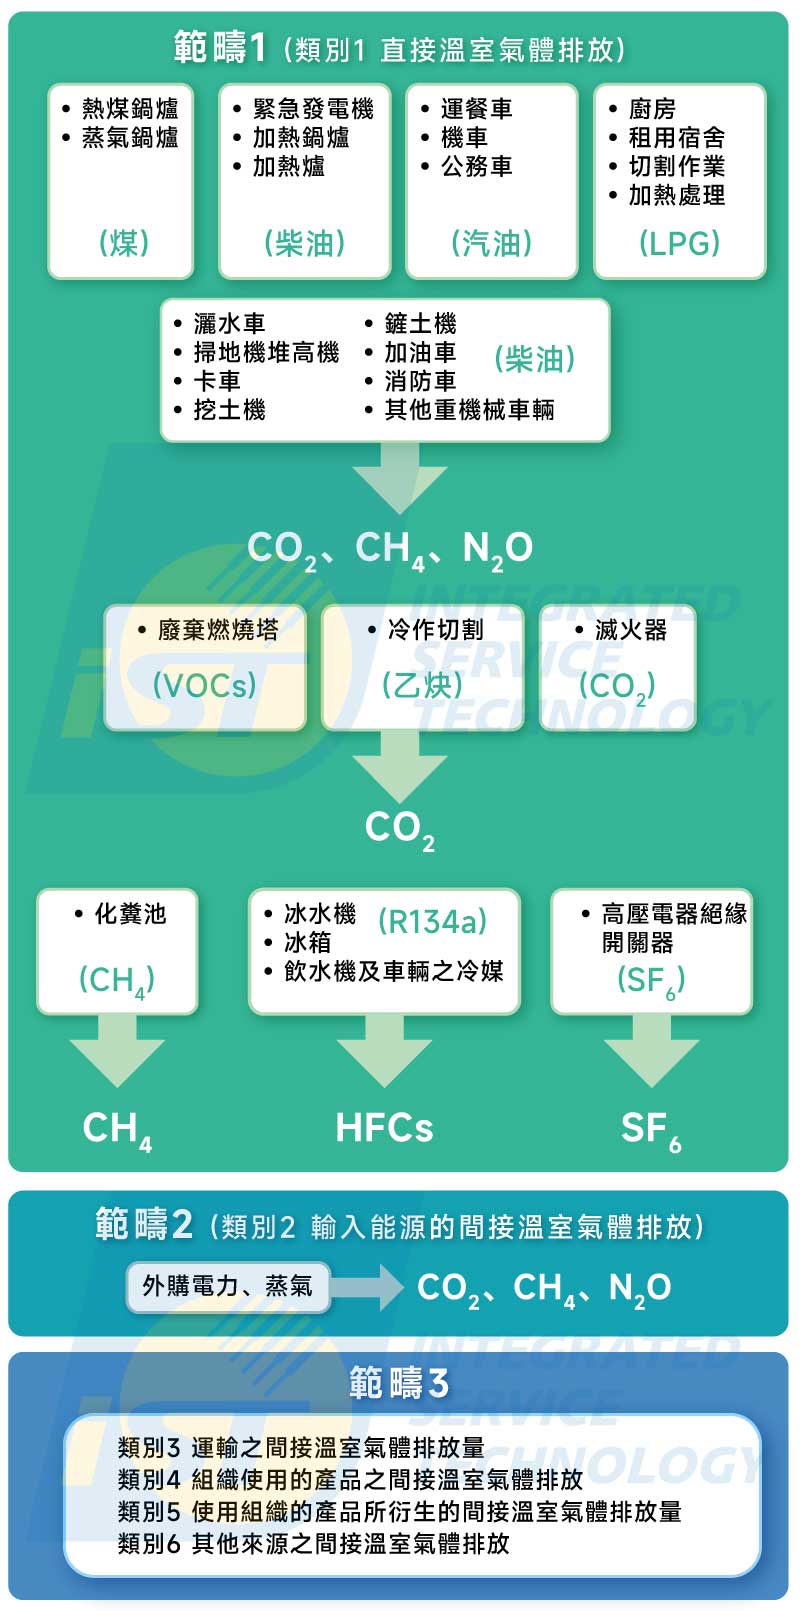 溫室氣體 此圖依據 ISO 14064-1排放源的分類，但將溫室氣體排放區分成三大範疇說明。